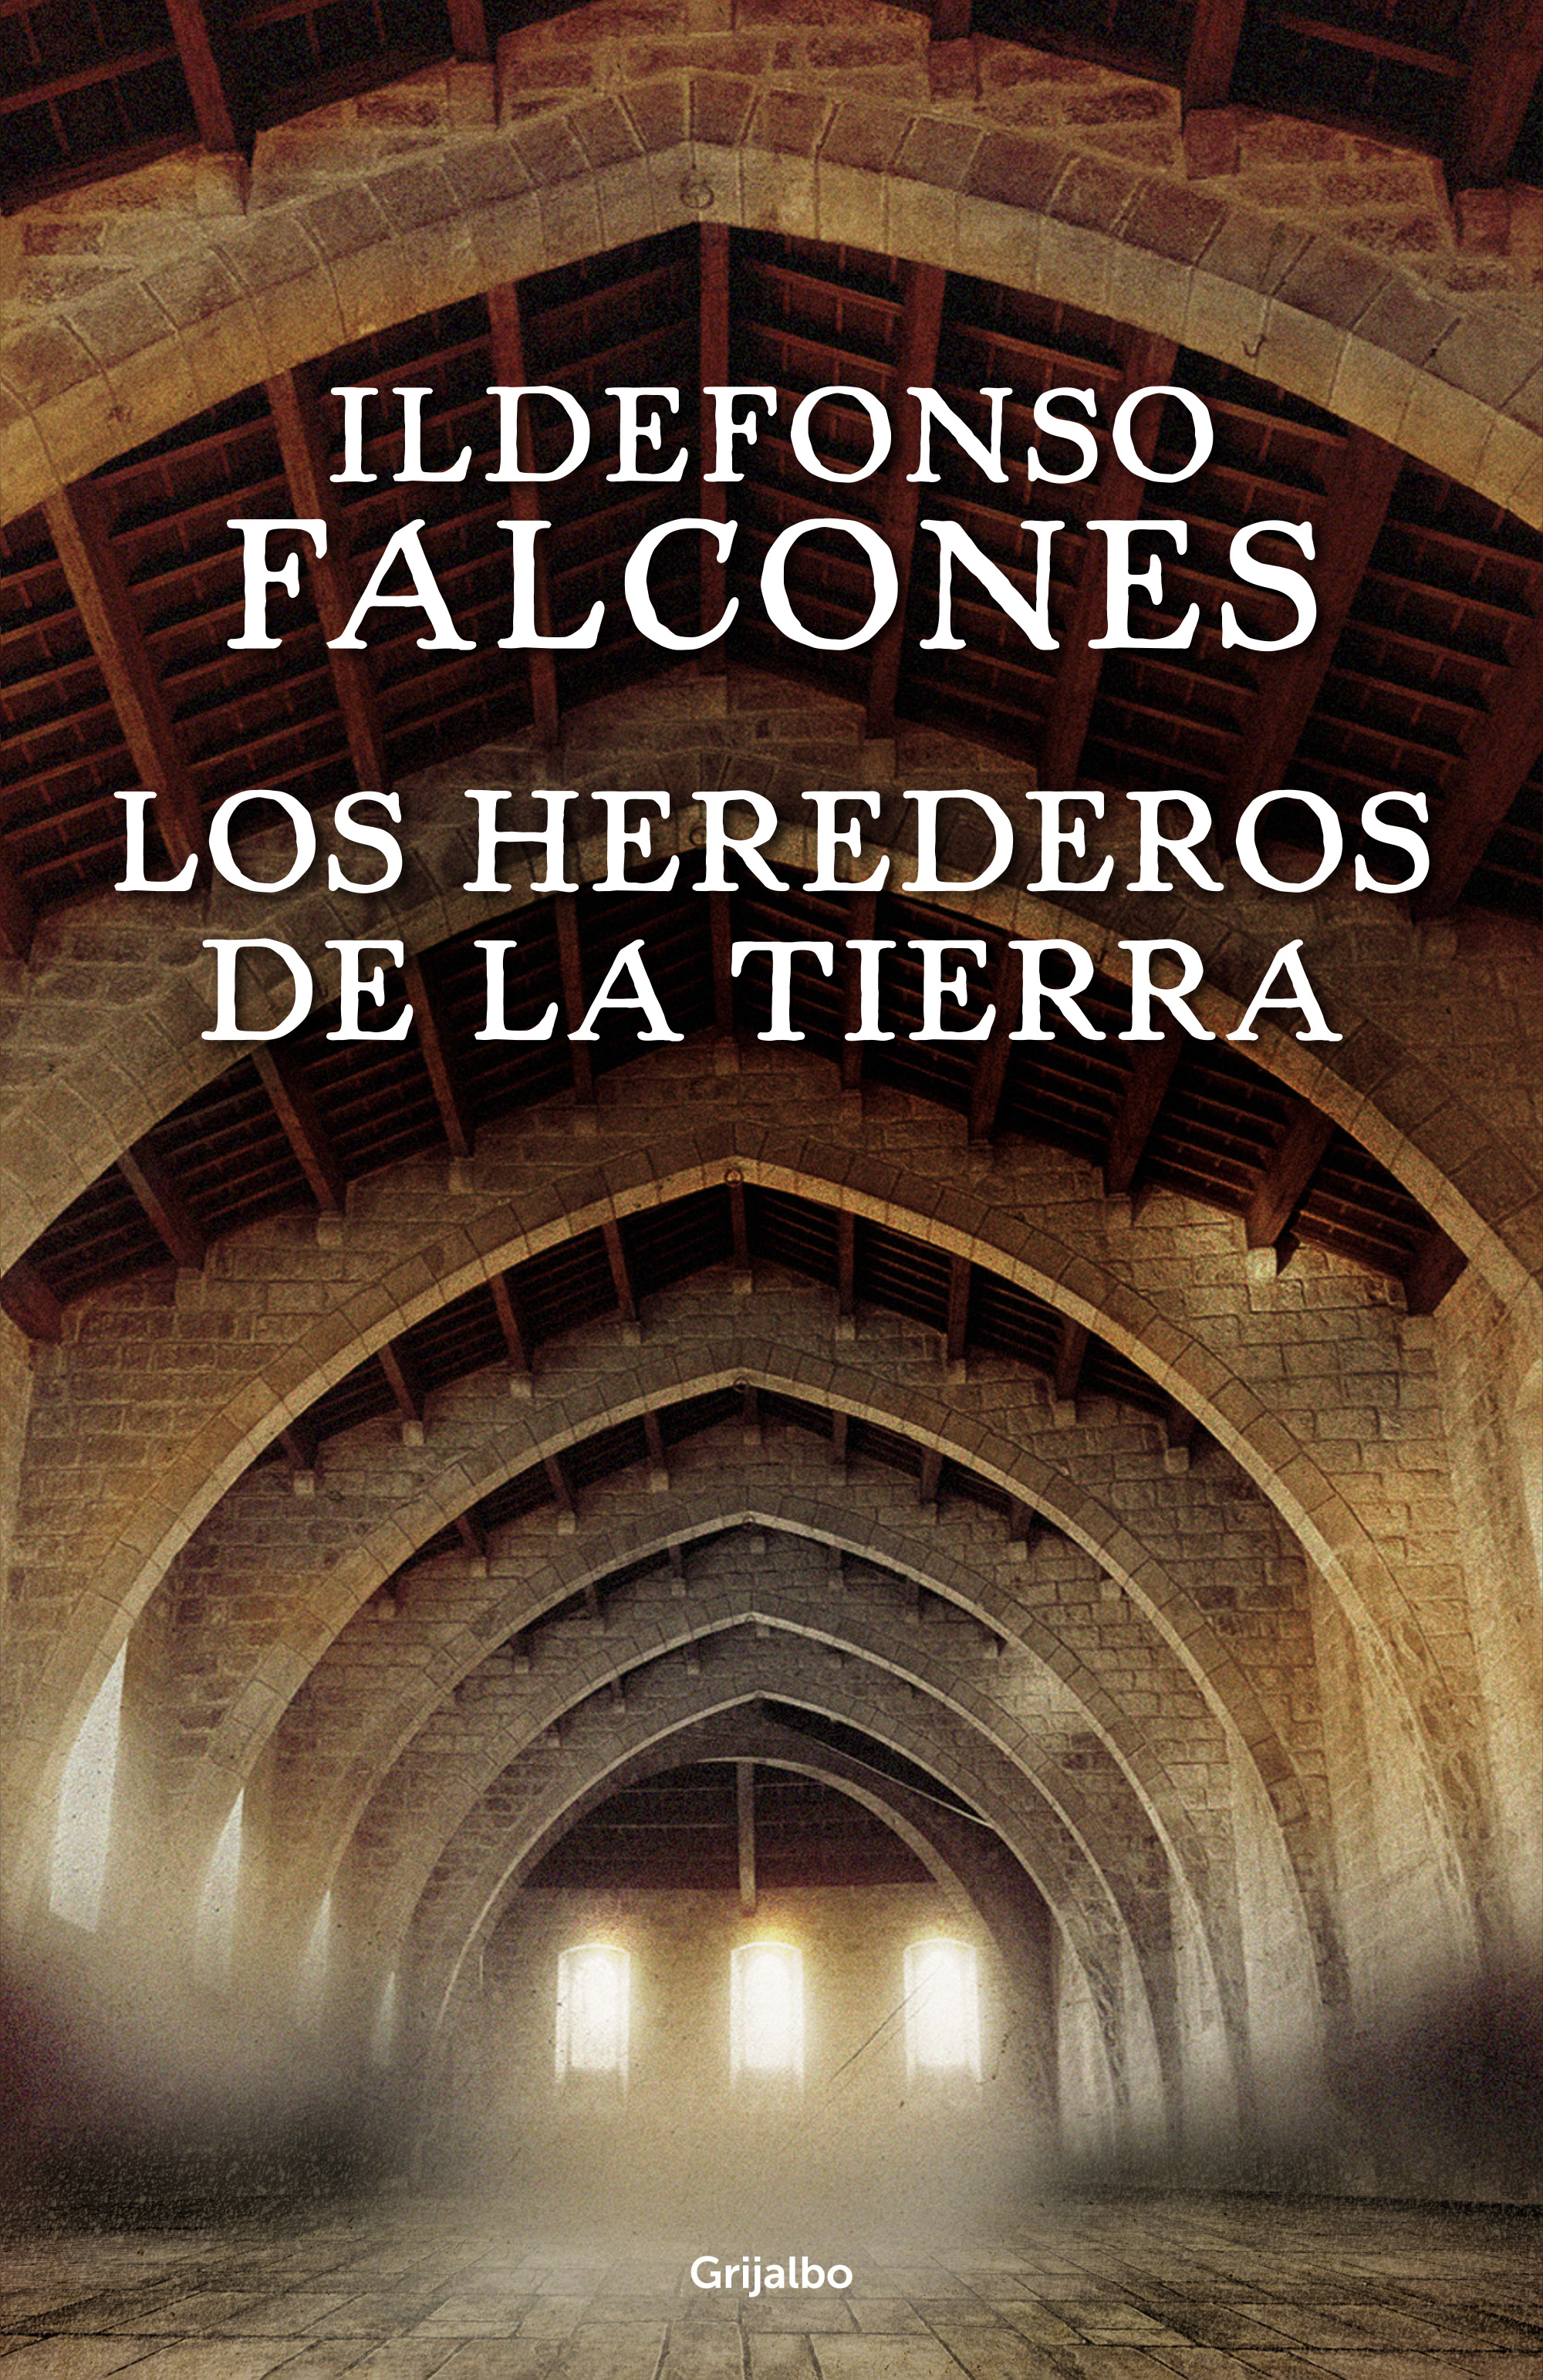 El libro de la semana «Los herederos de la tierra» de Ildefonso Falcones.